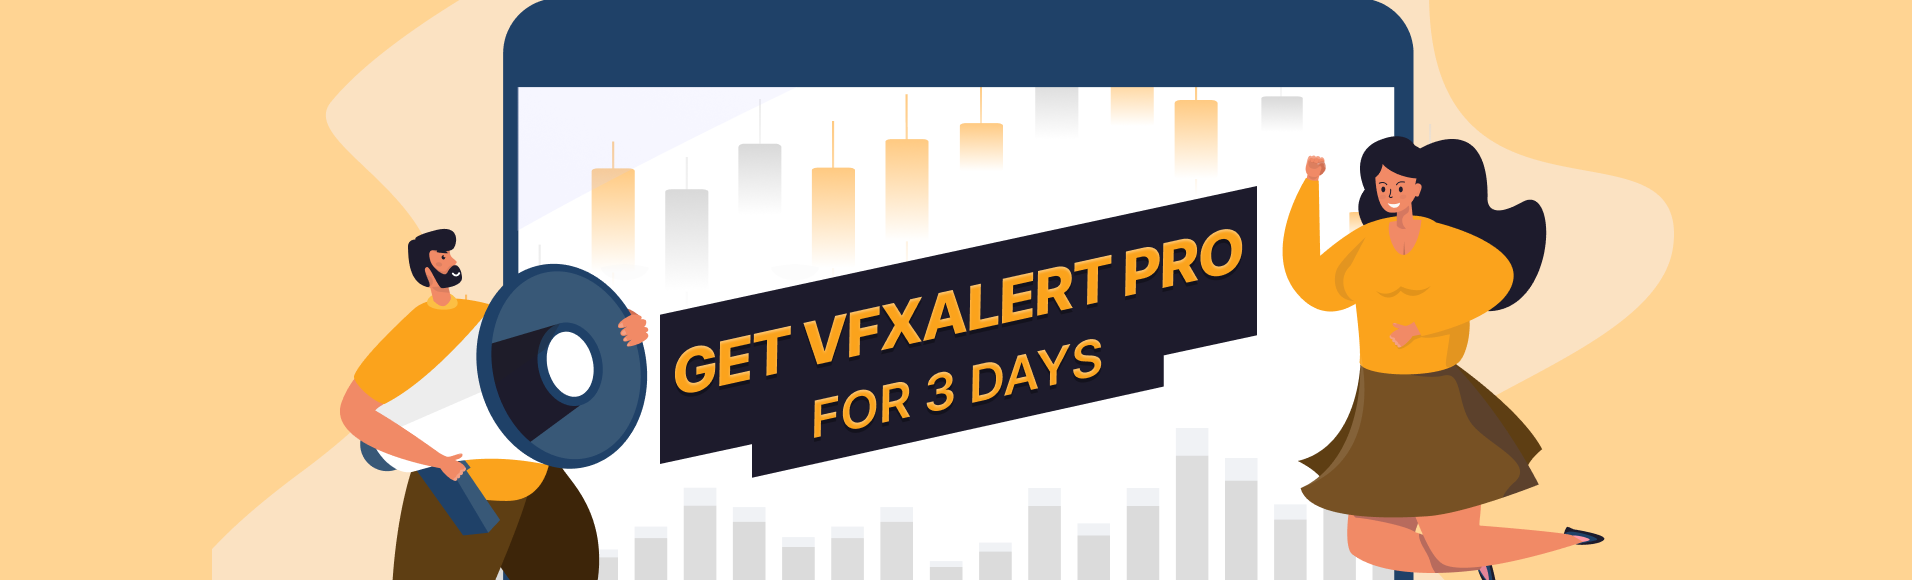 Syarat dan ketentuan promosi  vfxAlert PRO selama 3 hari 